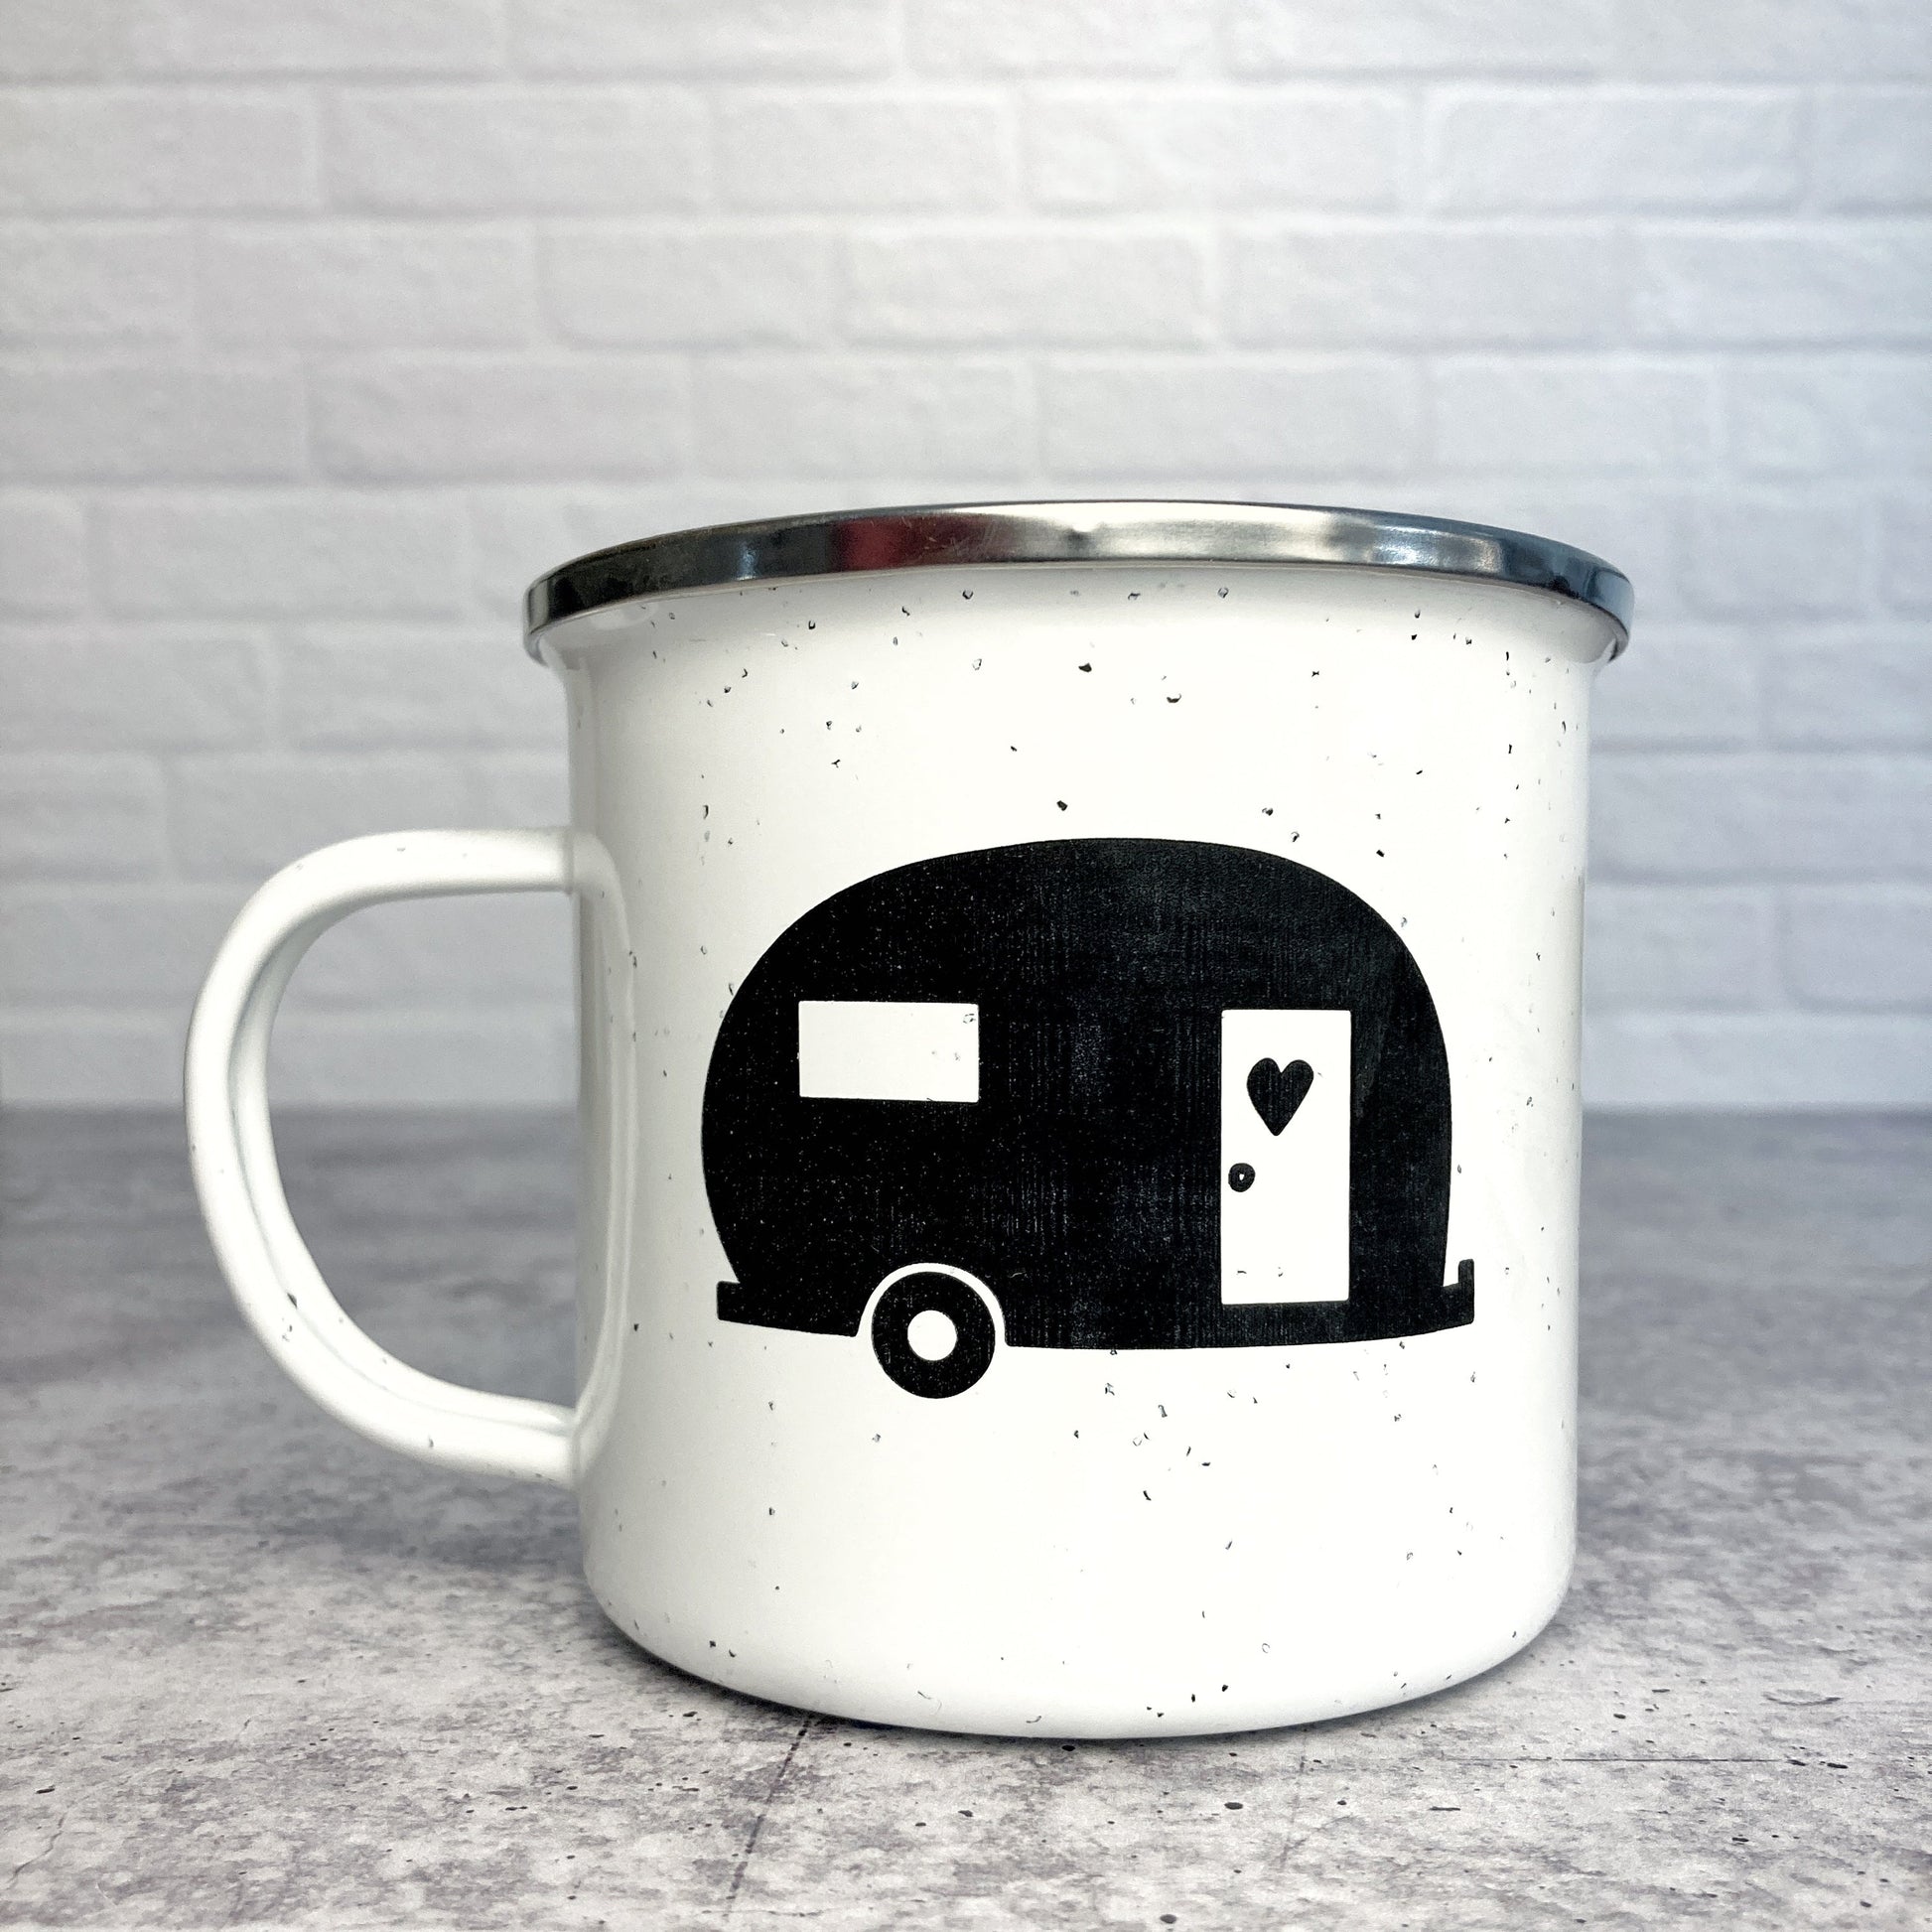 Vintage Camper design on a white enamel mug